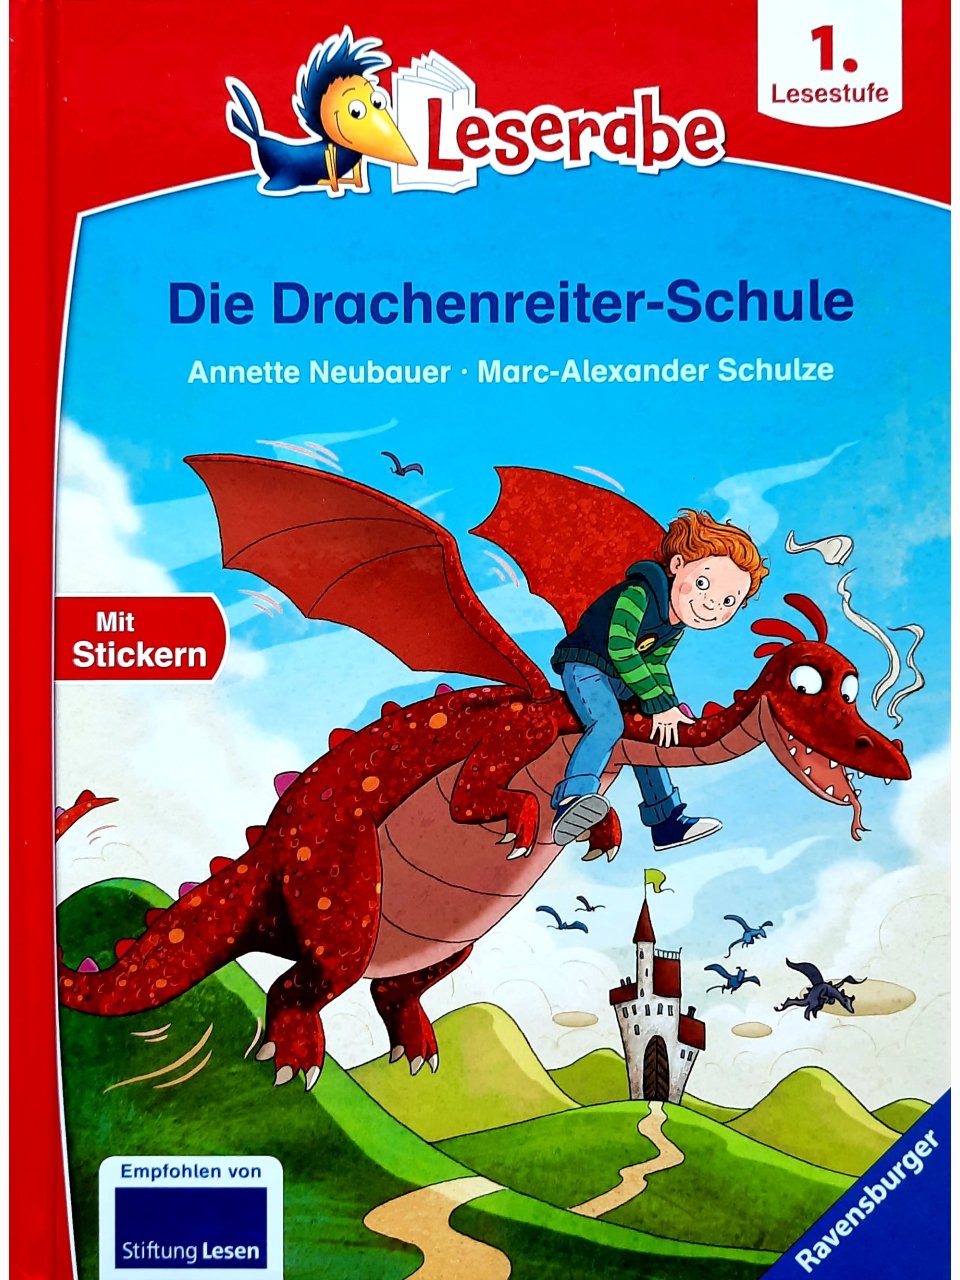 Die Drachenreiter-Schule - Leserabe ab 1. Lesestufe